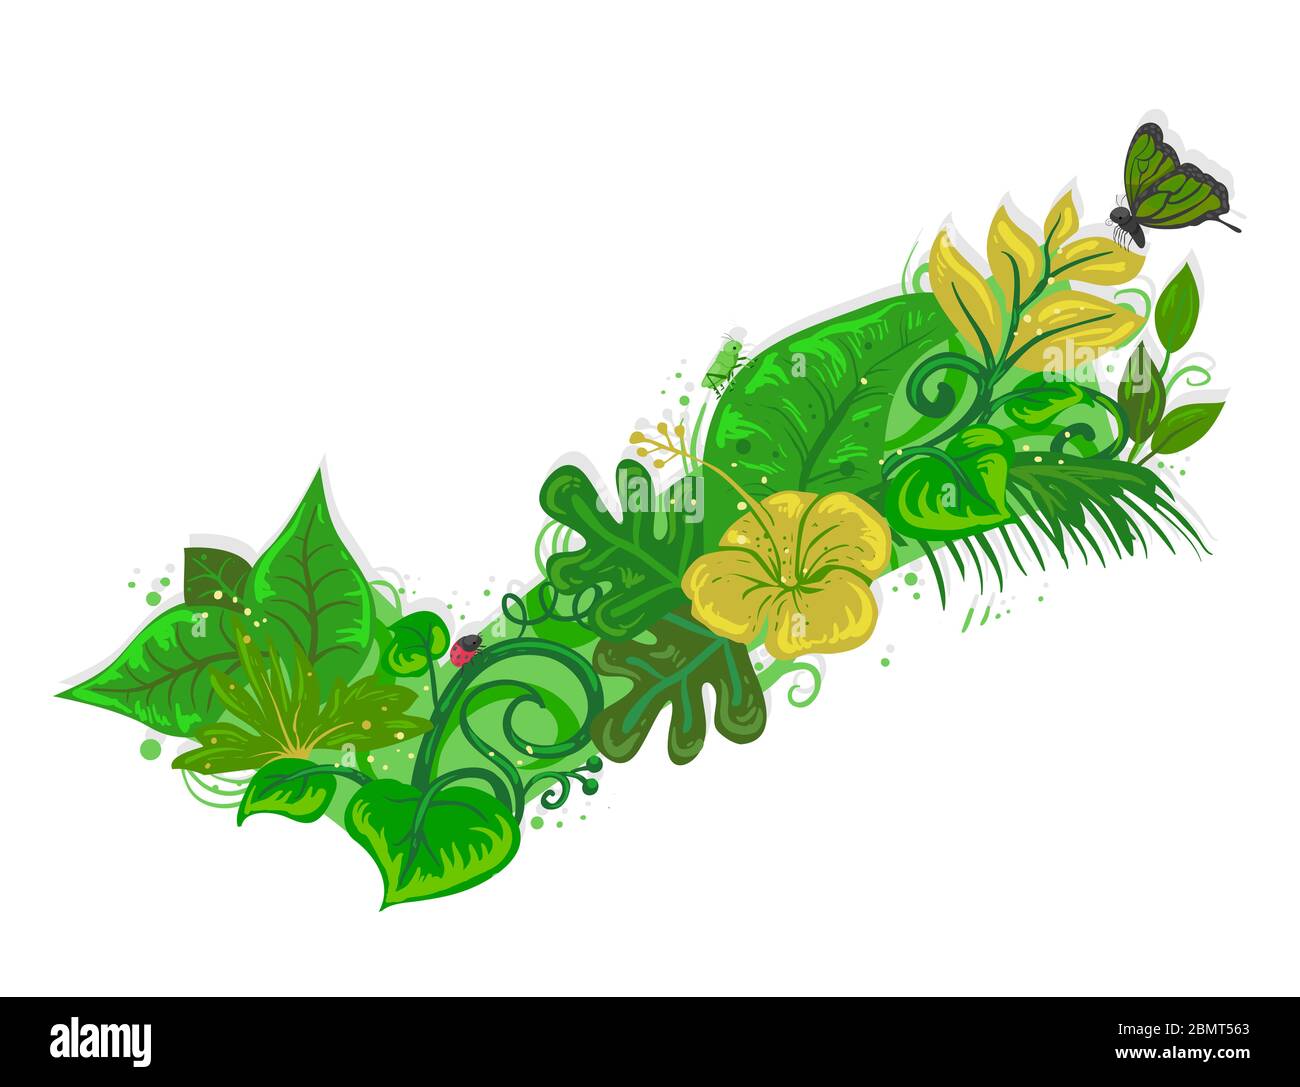 Illustration de fleurs, feuilles, plantes, papillons, betteraves et cabas formant une marque cochée Banque D'Images